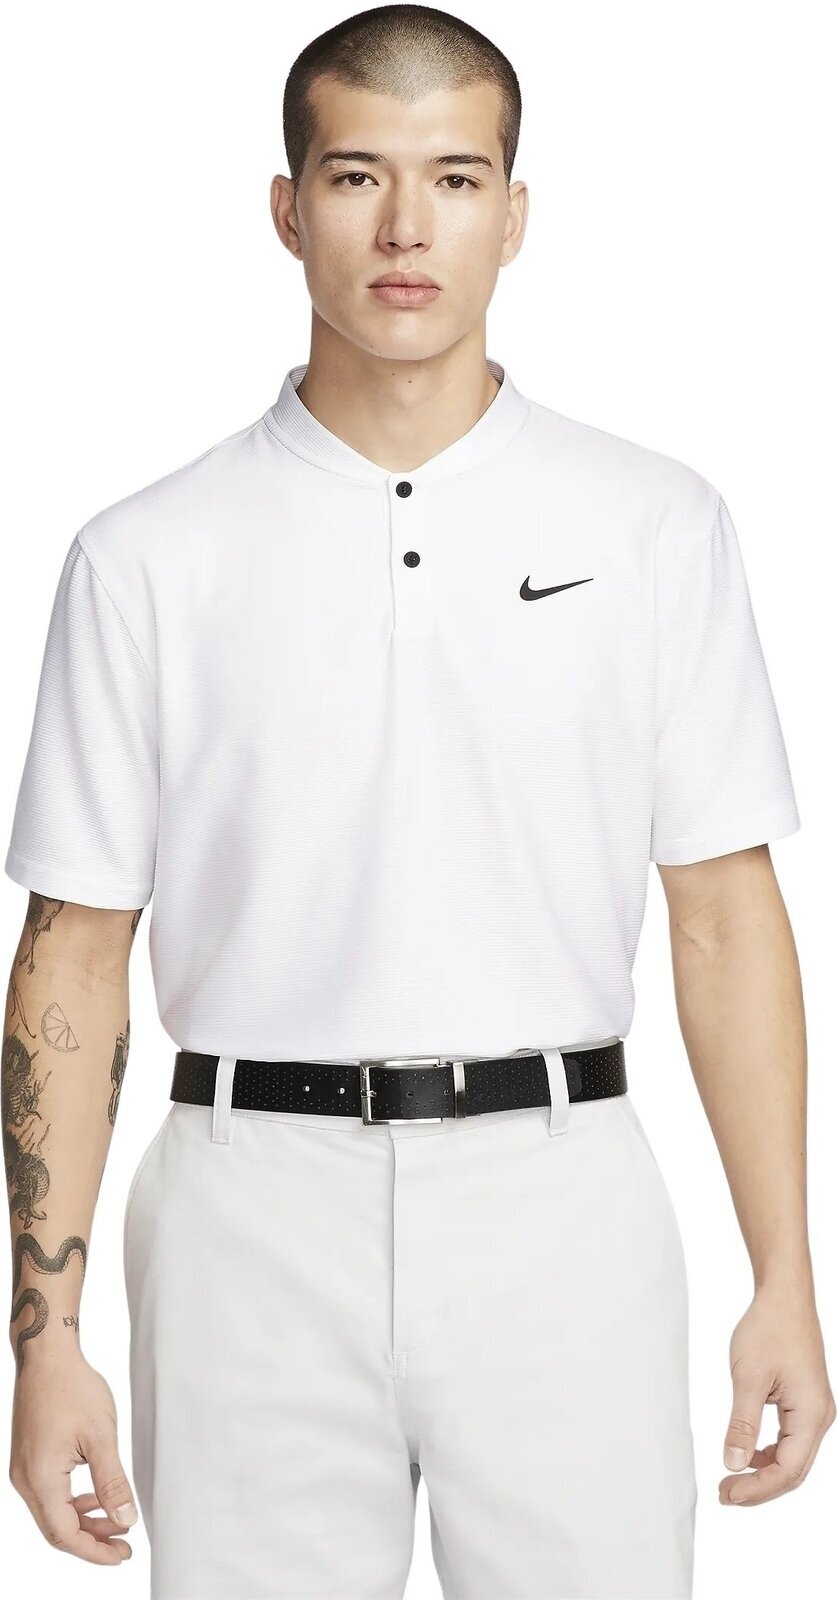 Polo majice Nike Dri-Fit Victory Texture Mens Polo White/Black S Polo majice